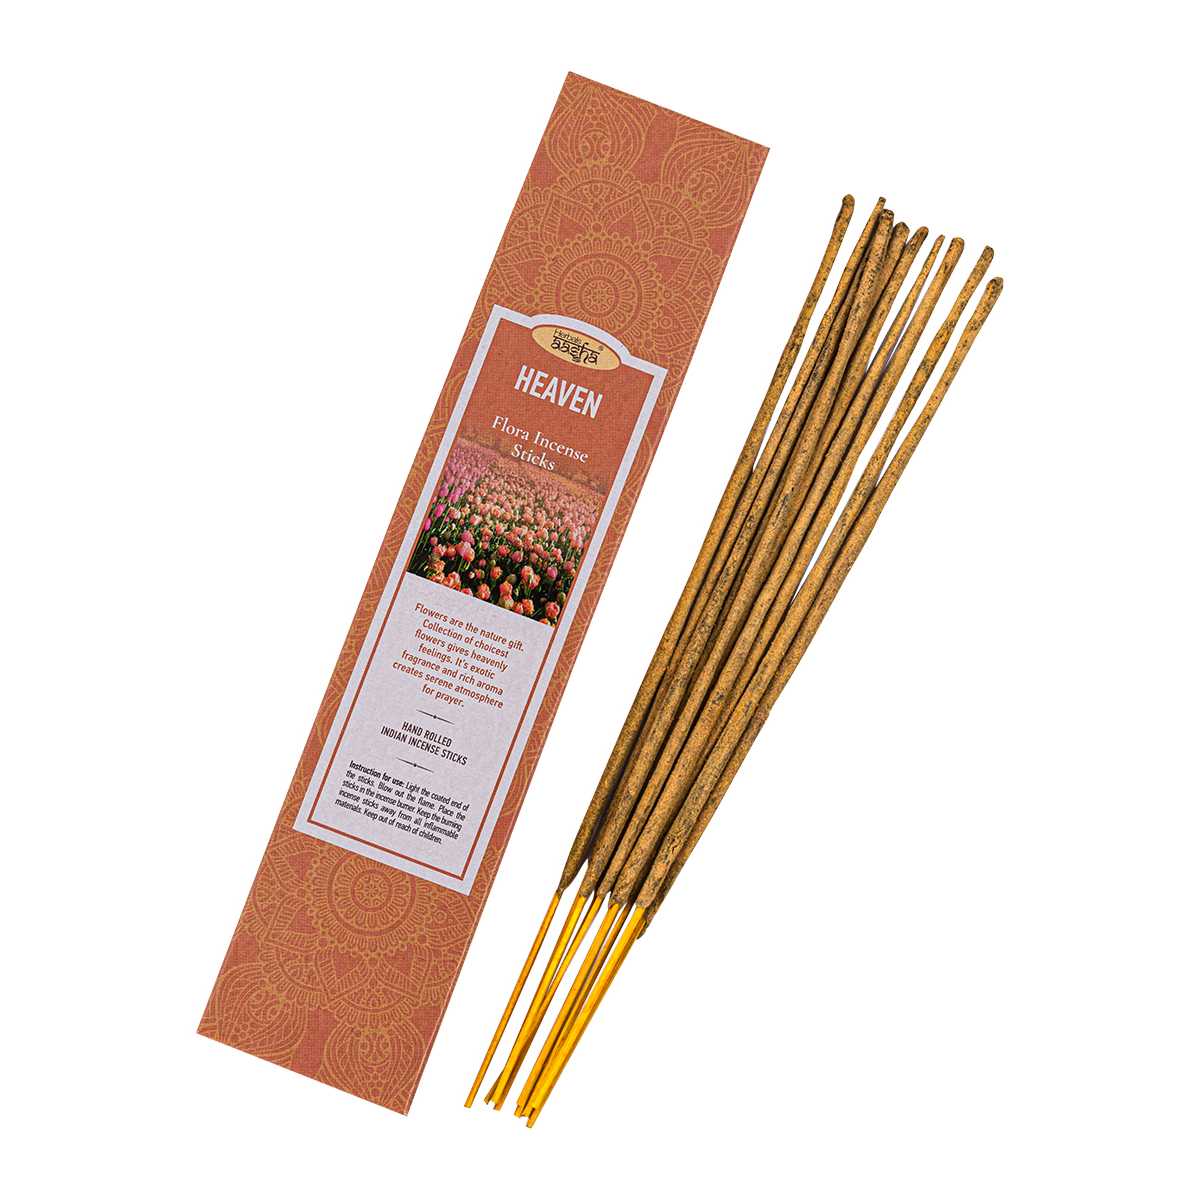 Ароматические палочки Aasha Herbals Райское блаженство (Heaven), 10 шт rio палочки для канареек с мёдом и полезными семенами 80 гр